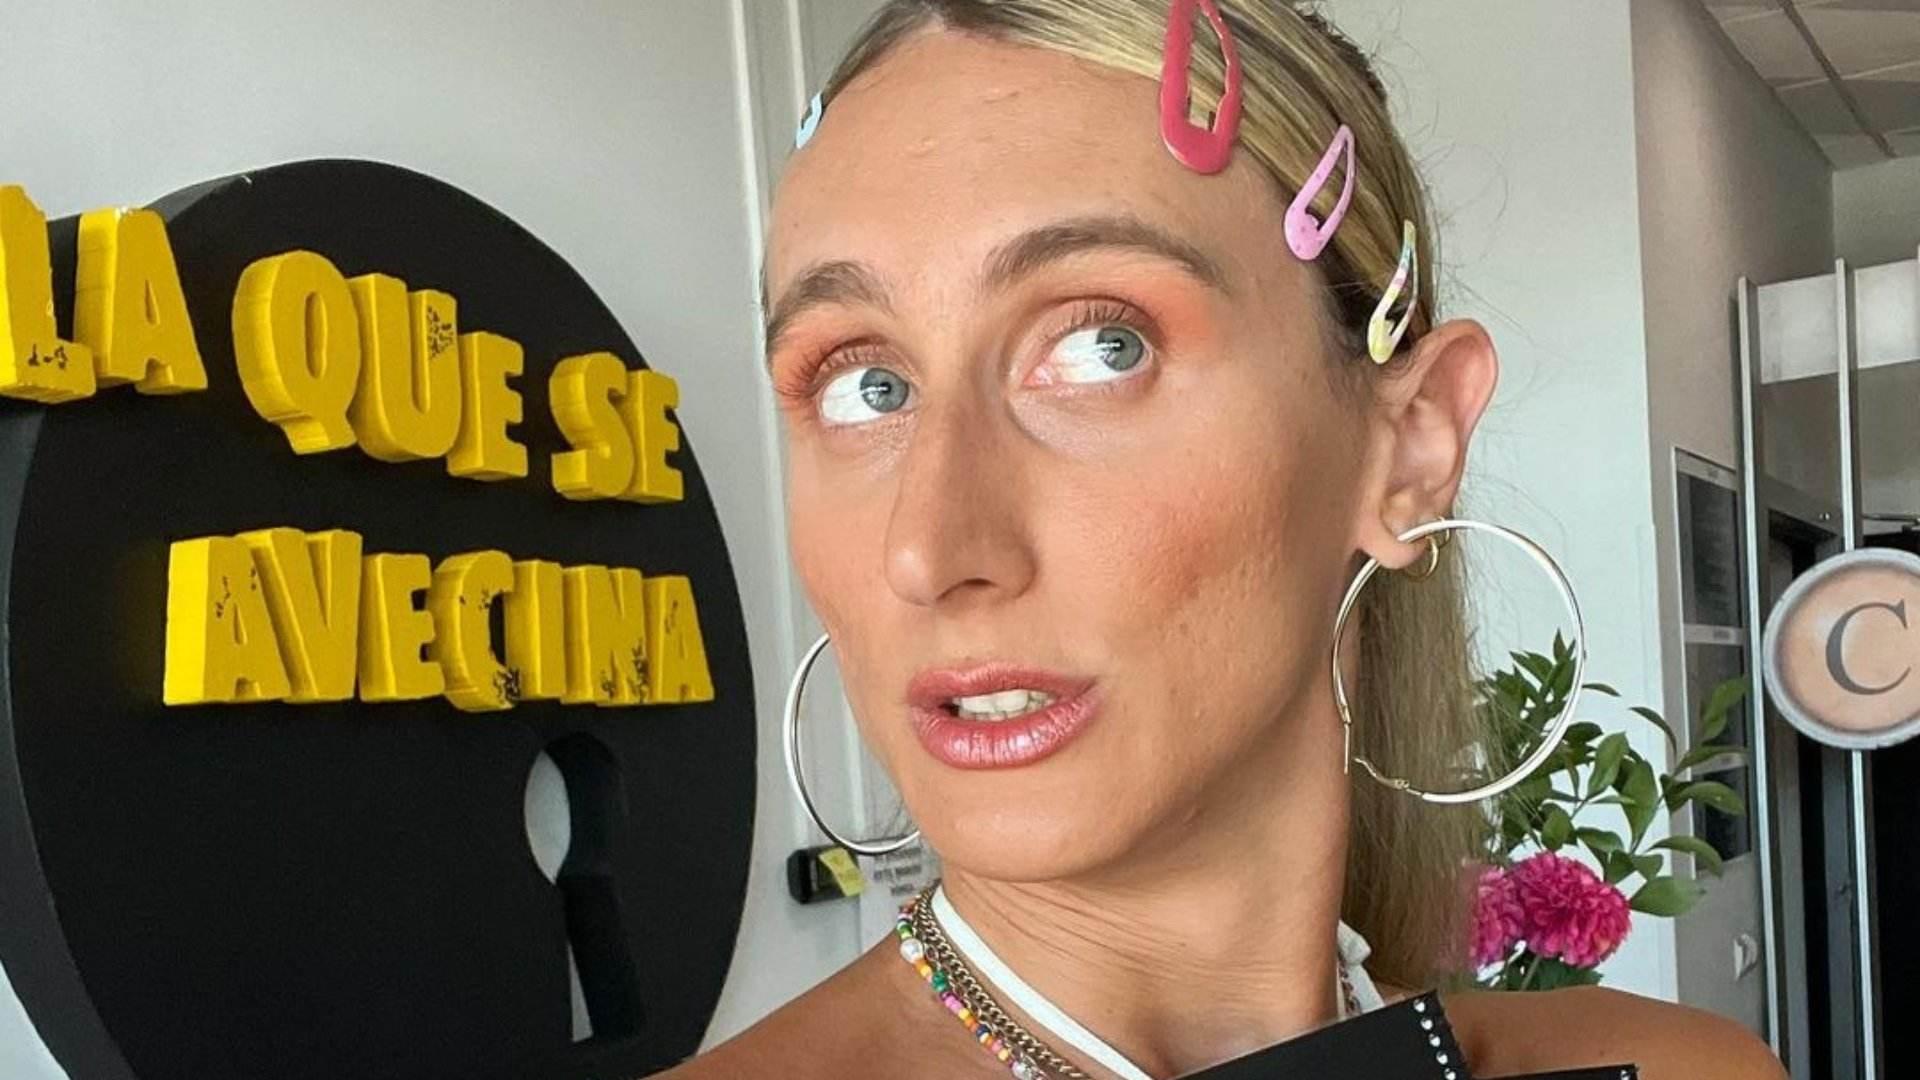 Transfòbia a Telecinco: tracten en masculí una actriu i ella esclata, "vomitivo"